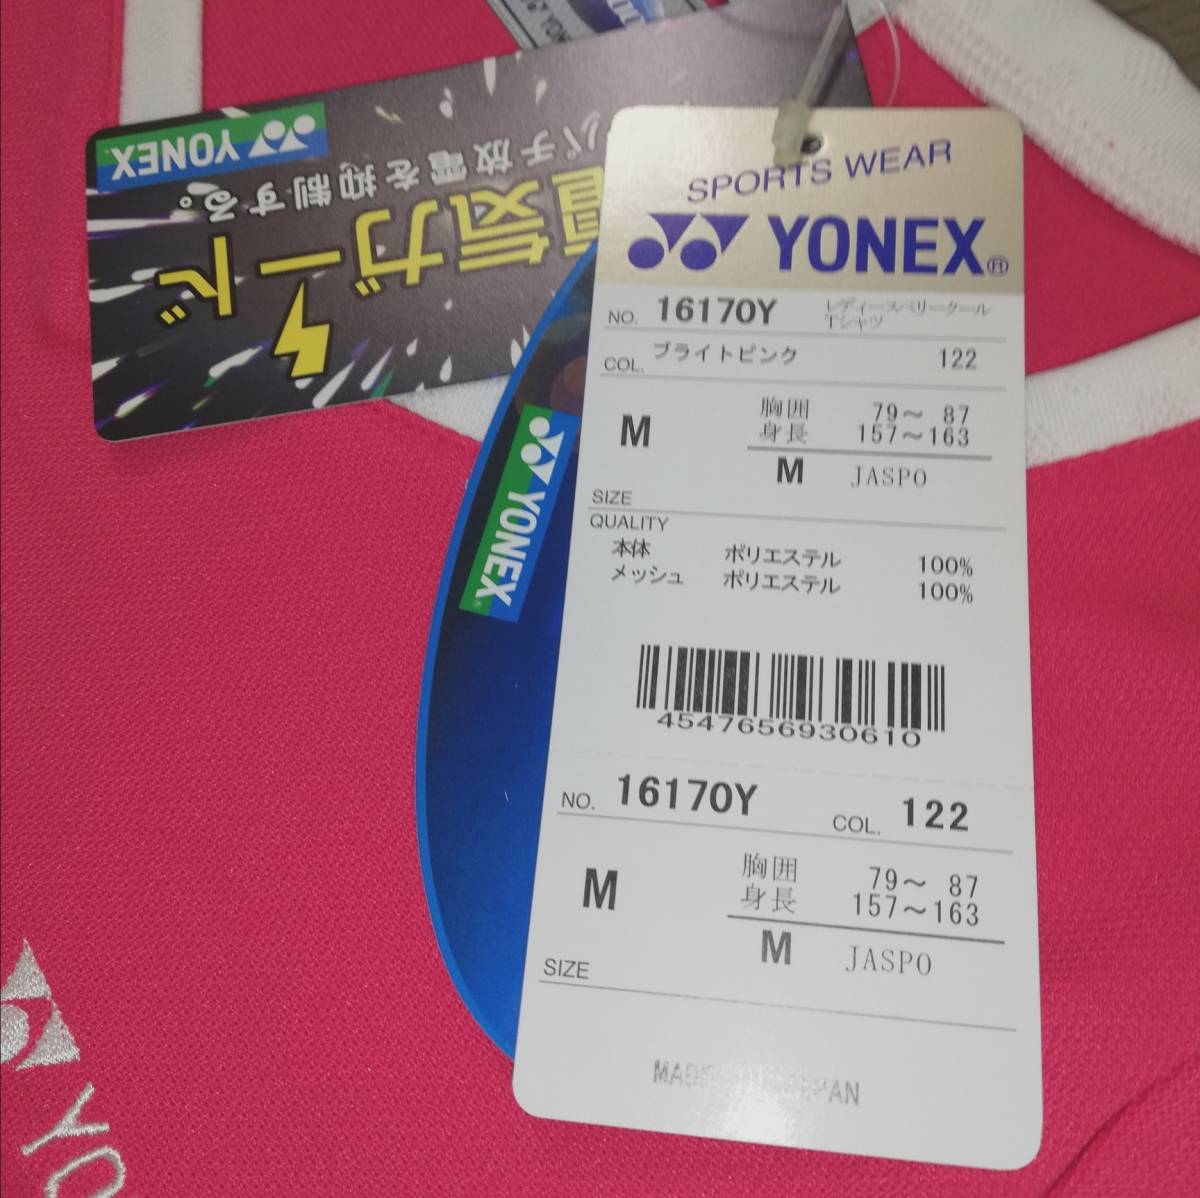  Yonex (YONEX) lady's be leak -ru T-shirt M size 16170Y-122 bright pink 